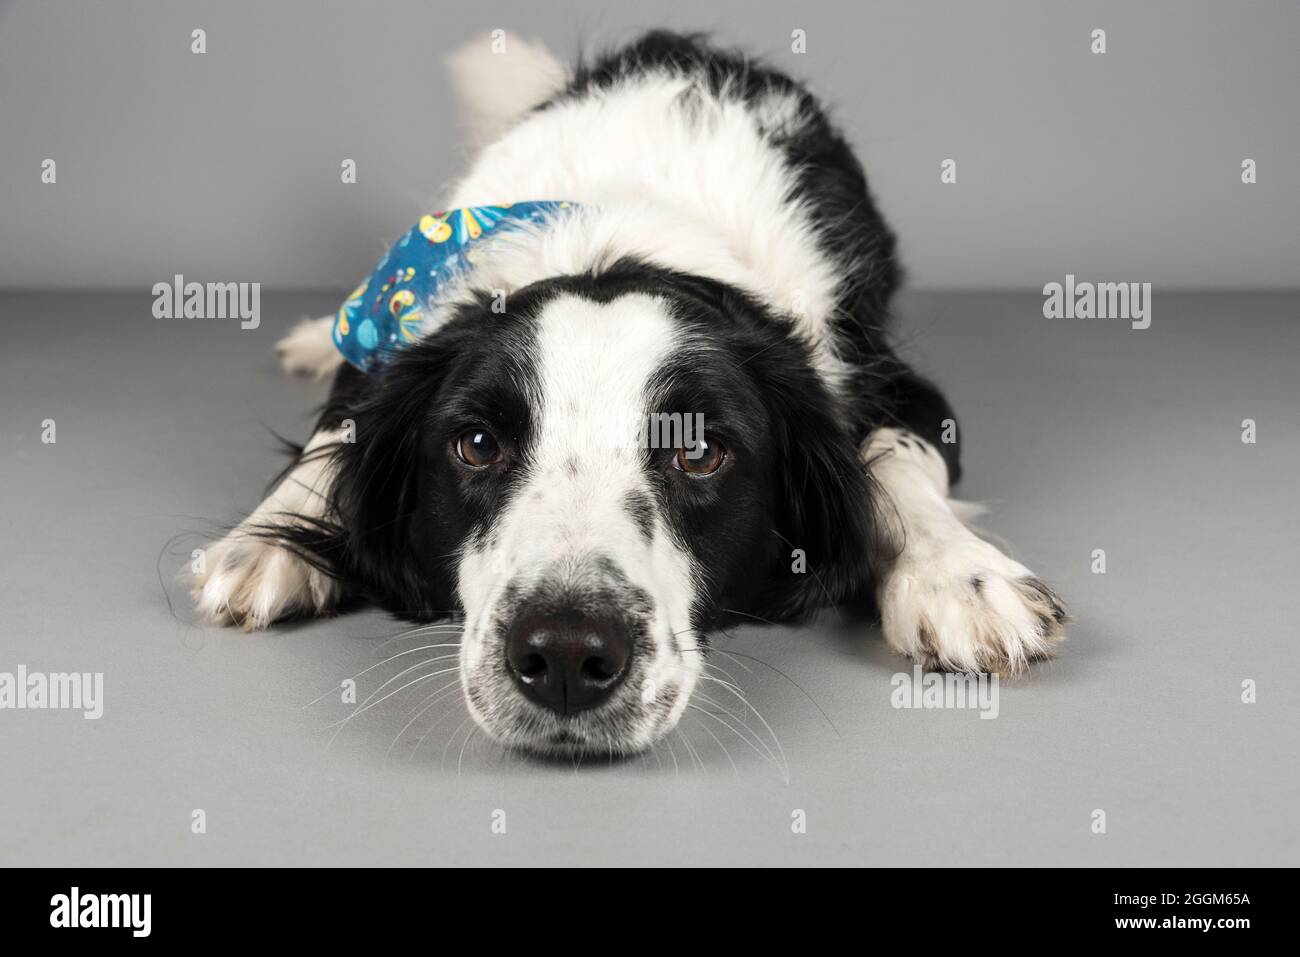 Une femme de 4 ans Border Collie / Springer Spaniel (Sprollie) chien (appelé Jess) photographié sur fond gris studio. Banque D'Images